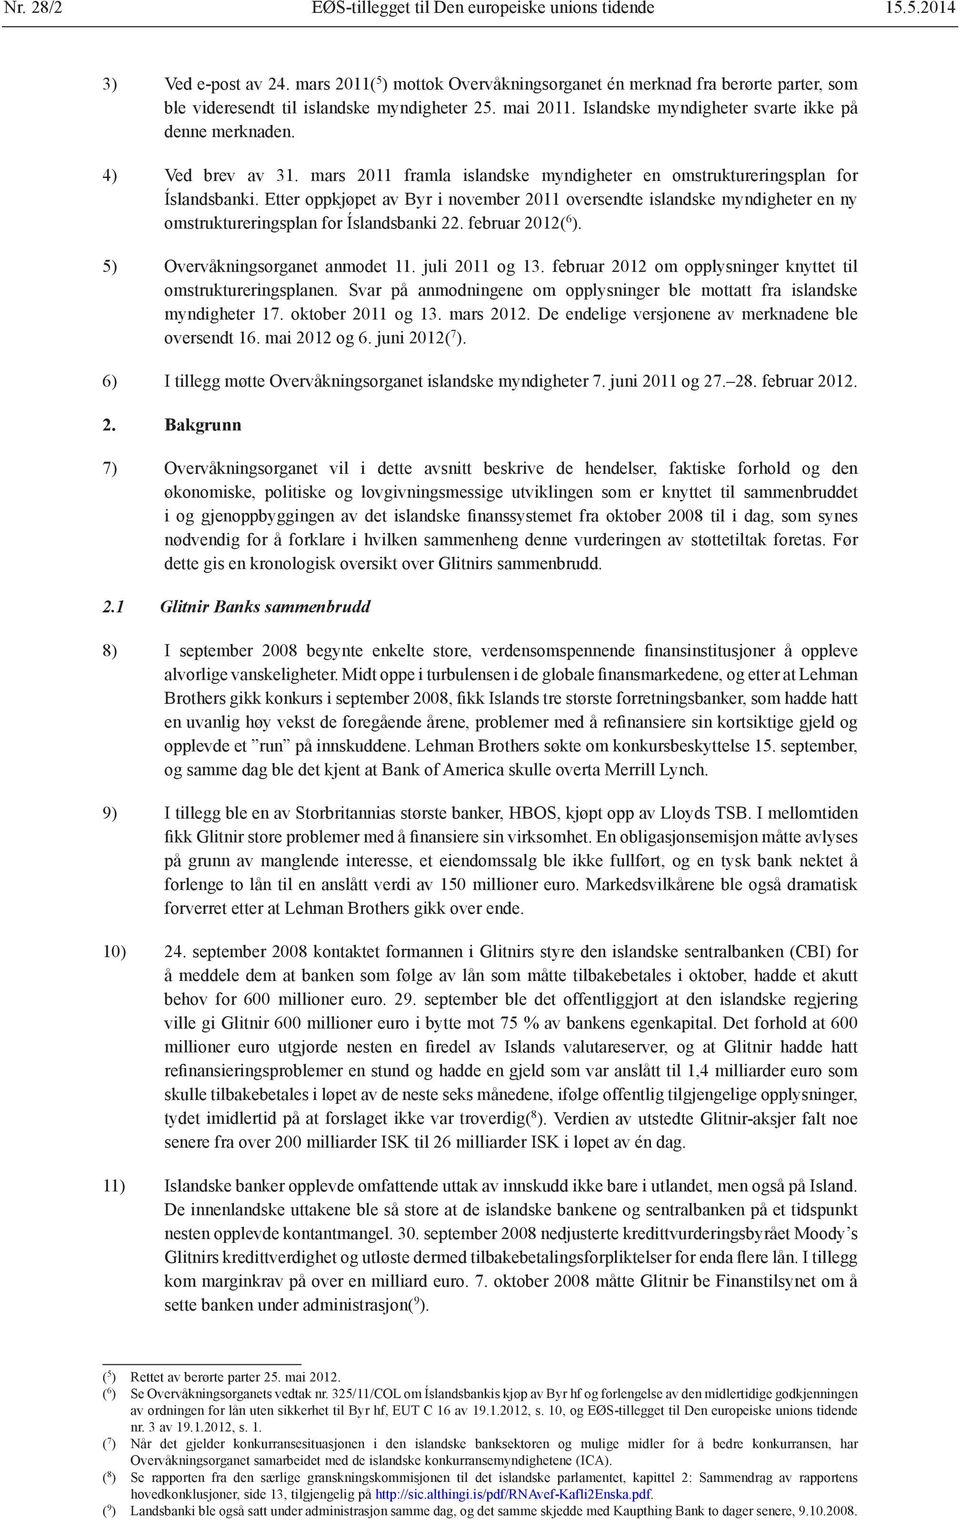 4) Ved brev av 31. mars 2011 framla islandske myndigheter en omstruktureringsplan for Íslandsbanki.